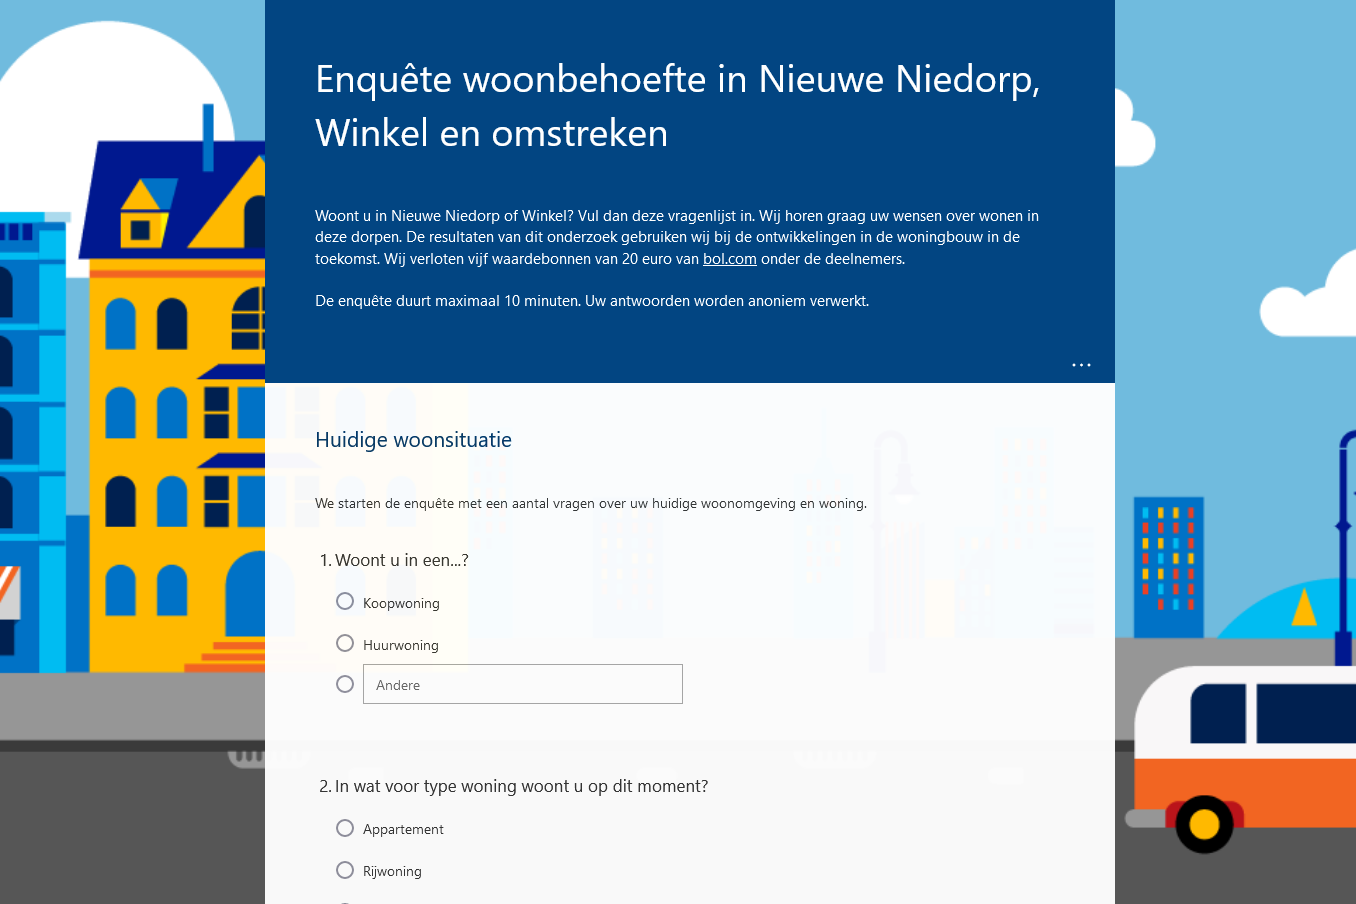 Screenshot 2022 05 09 at 17 48 51 Enquête woonbehoefte in Nieuwe Niedorp Winkel en omstrekenaaaa